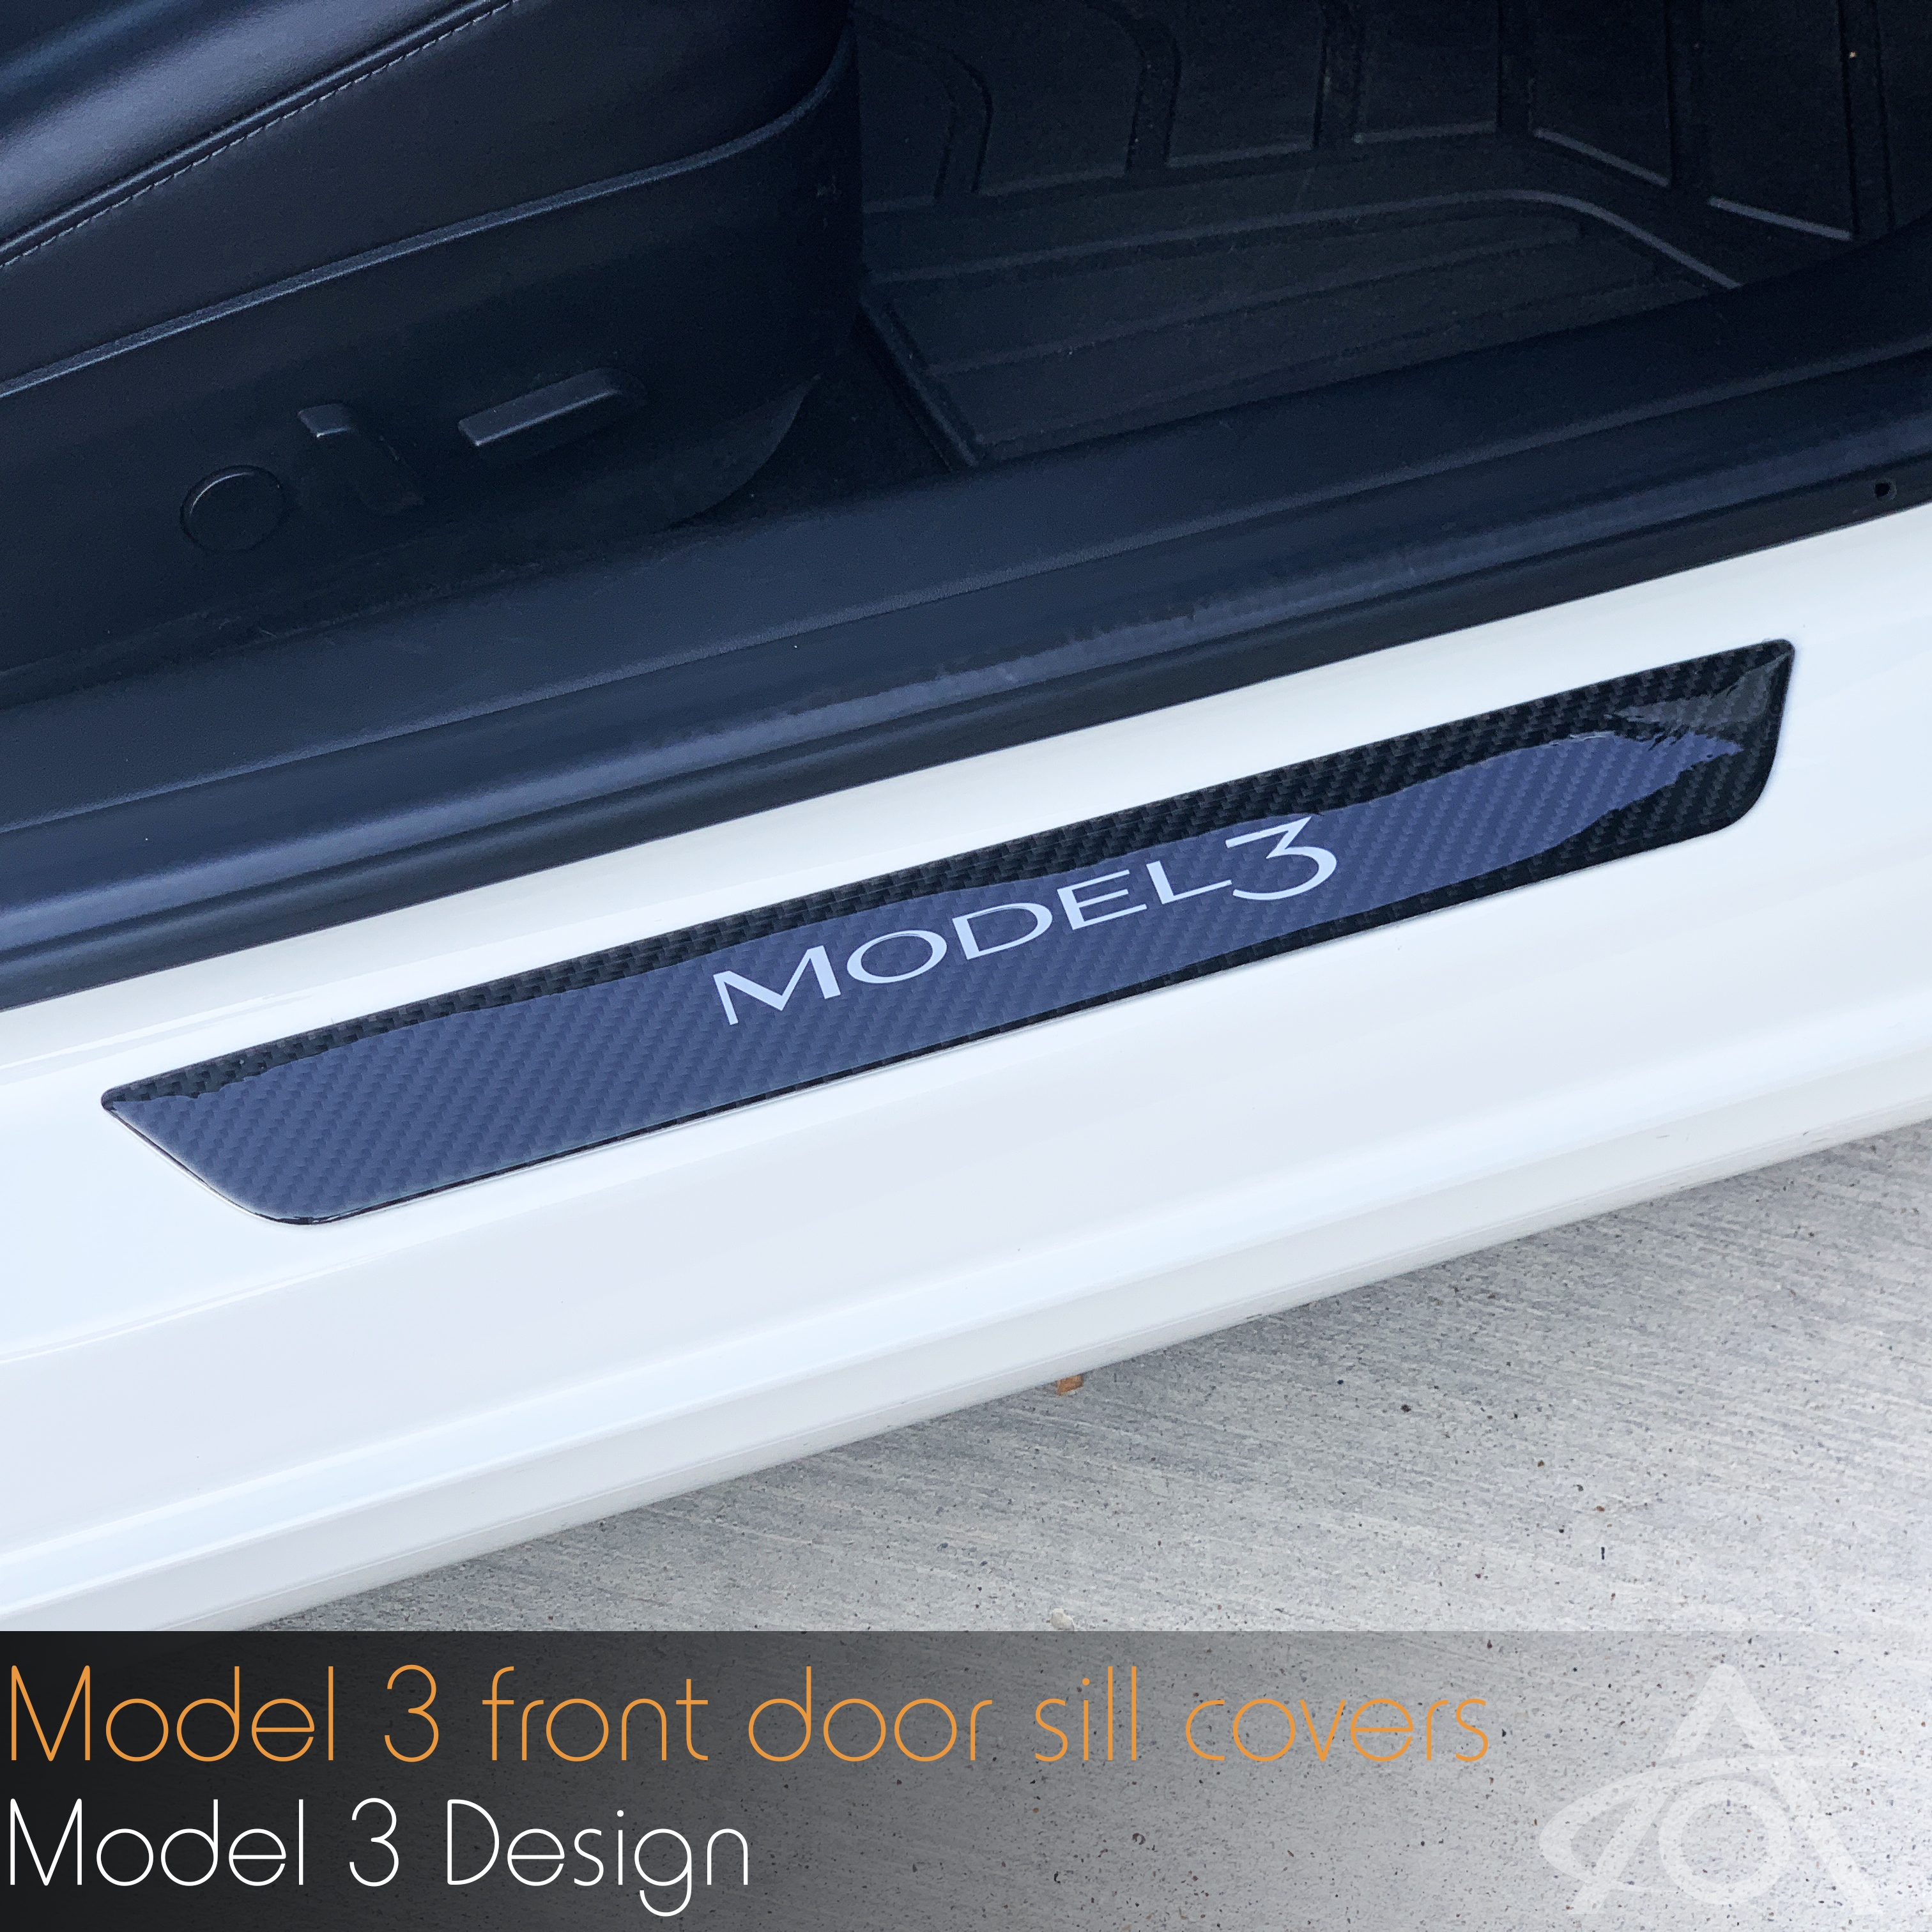 Model 3 Door Sill Covers